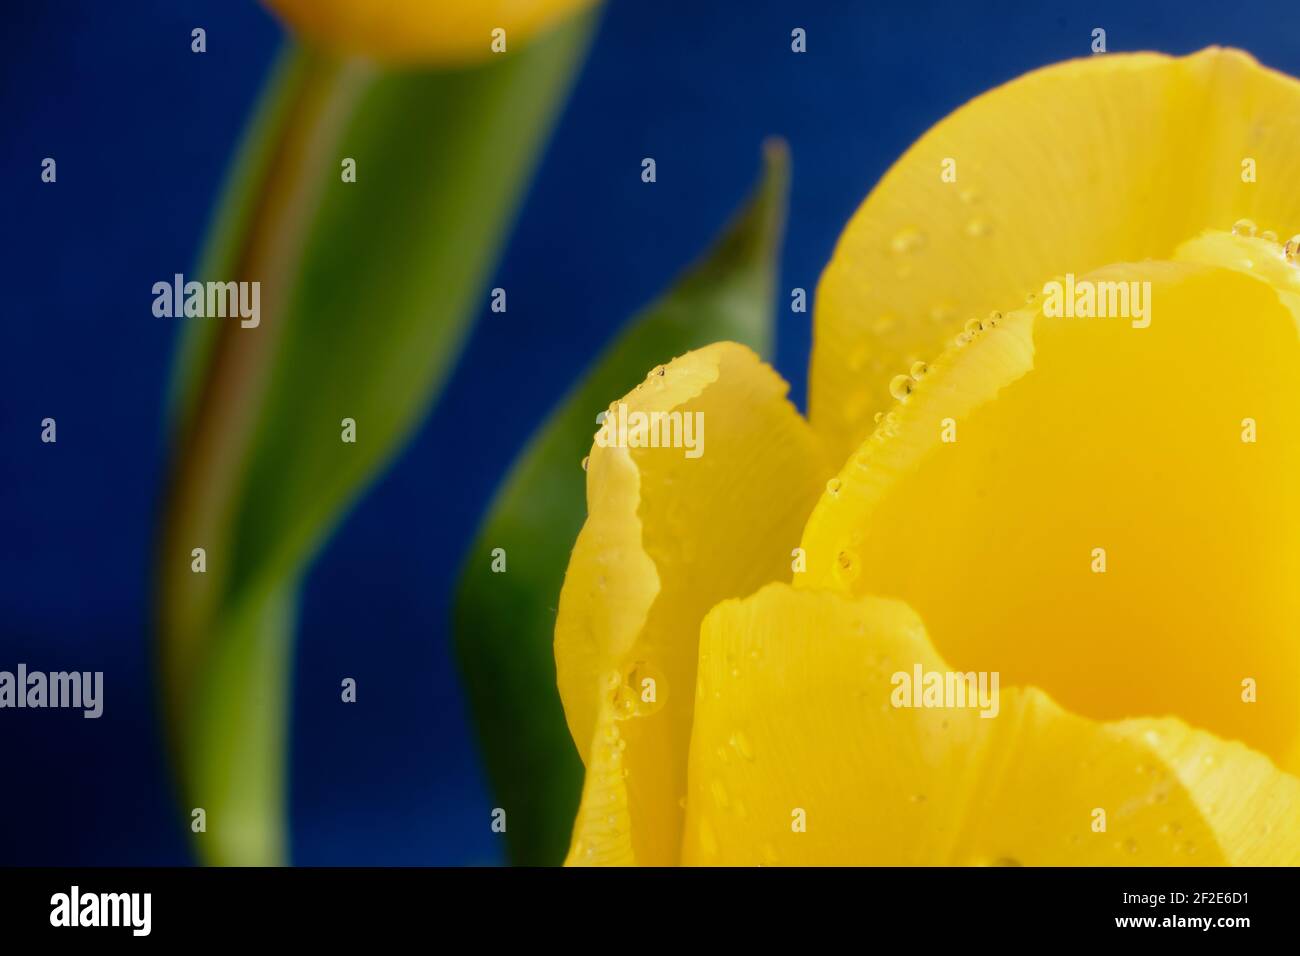 Photo macro de gouttelettes d'eau étincelant sur des pétales de tulipe jaunes. Le fond est bleu foncé avec une autre tulipe jaune et des feuilles vertes. Banque D'Images